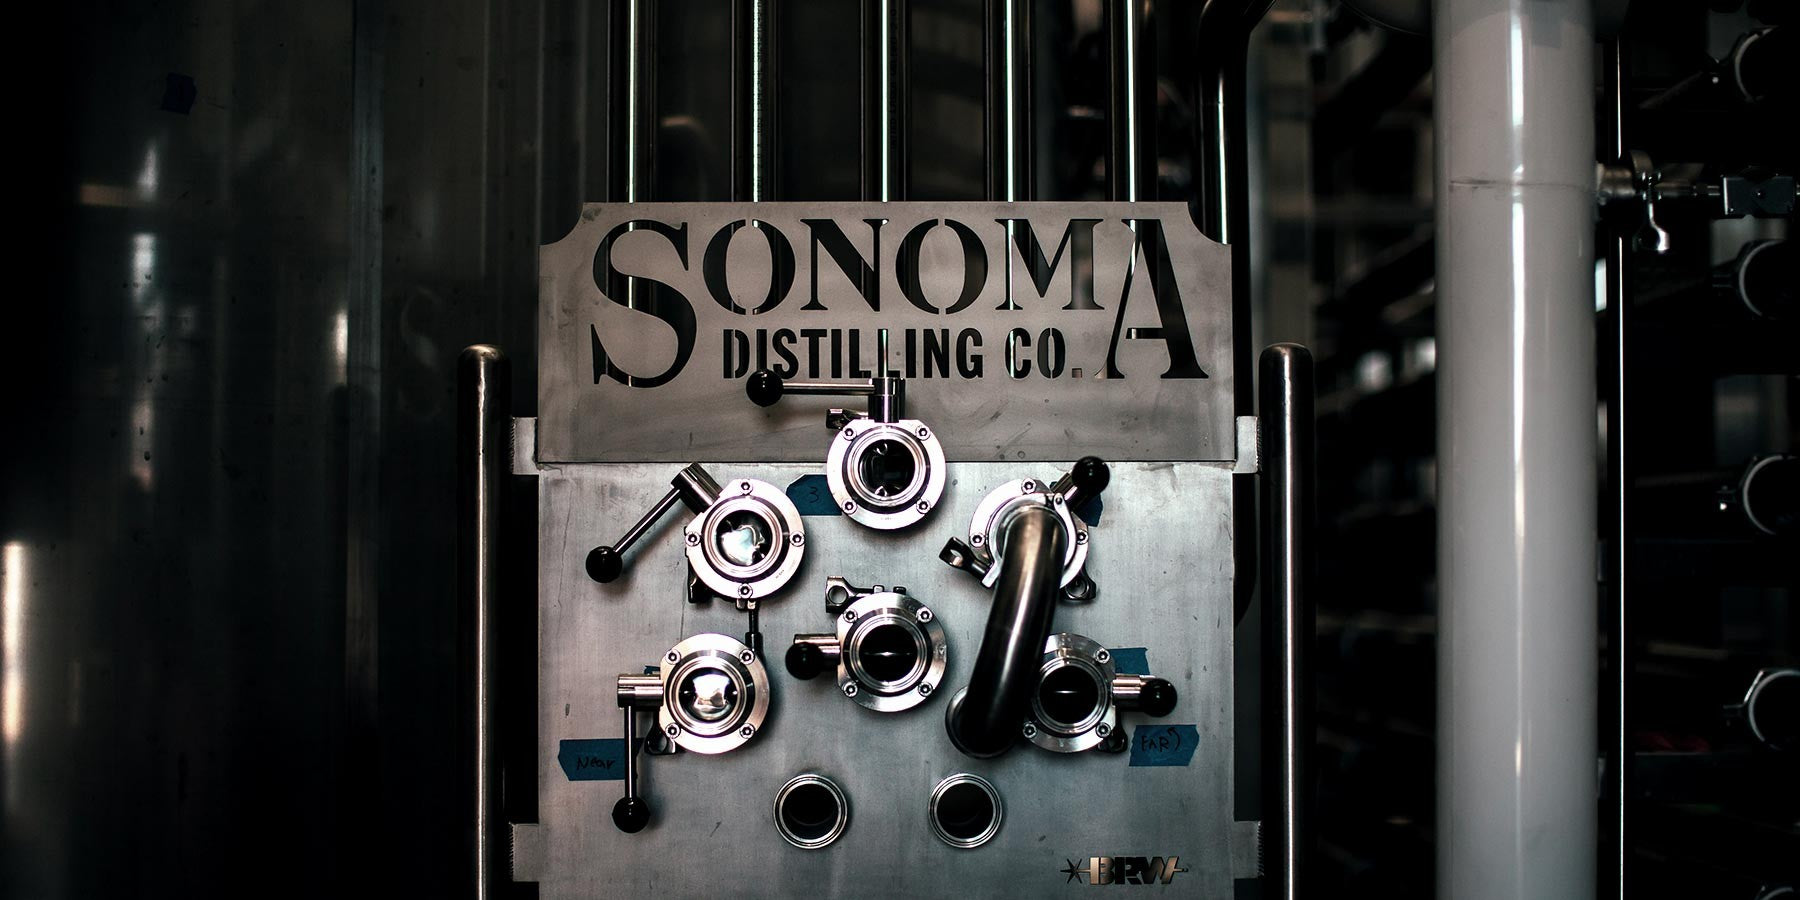 Sonoma Distilling Company